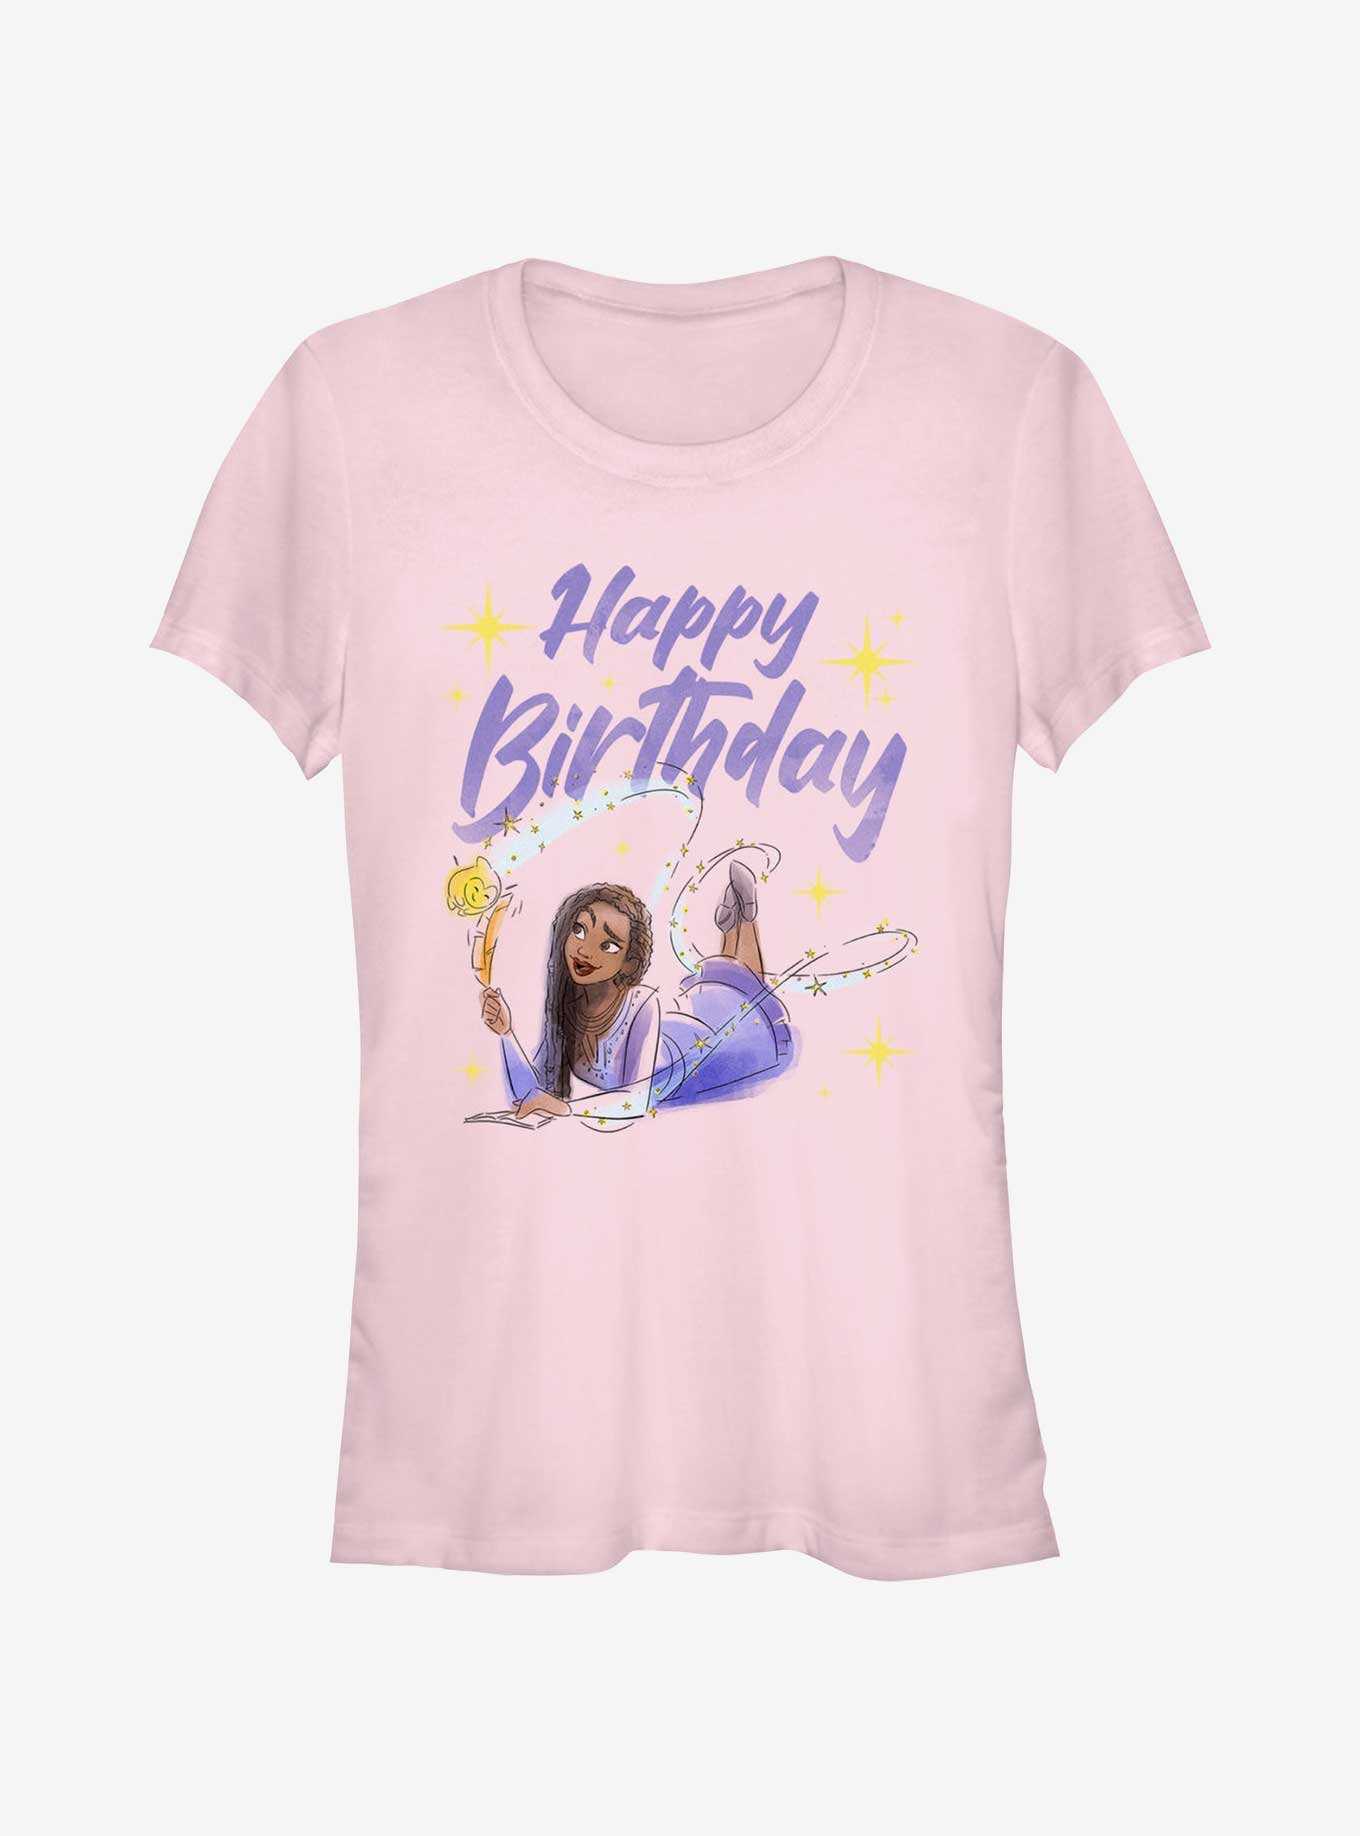 Disney Wish Happy Birthday Wish Girls T-Shirt, , hi-res